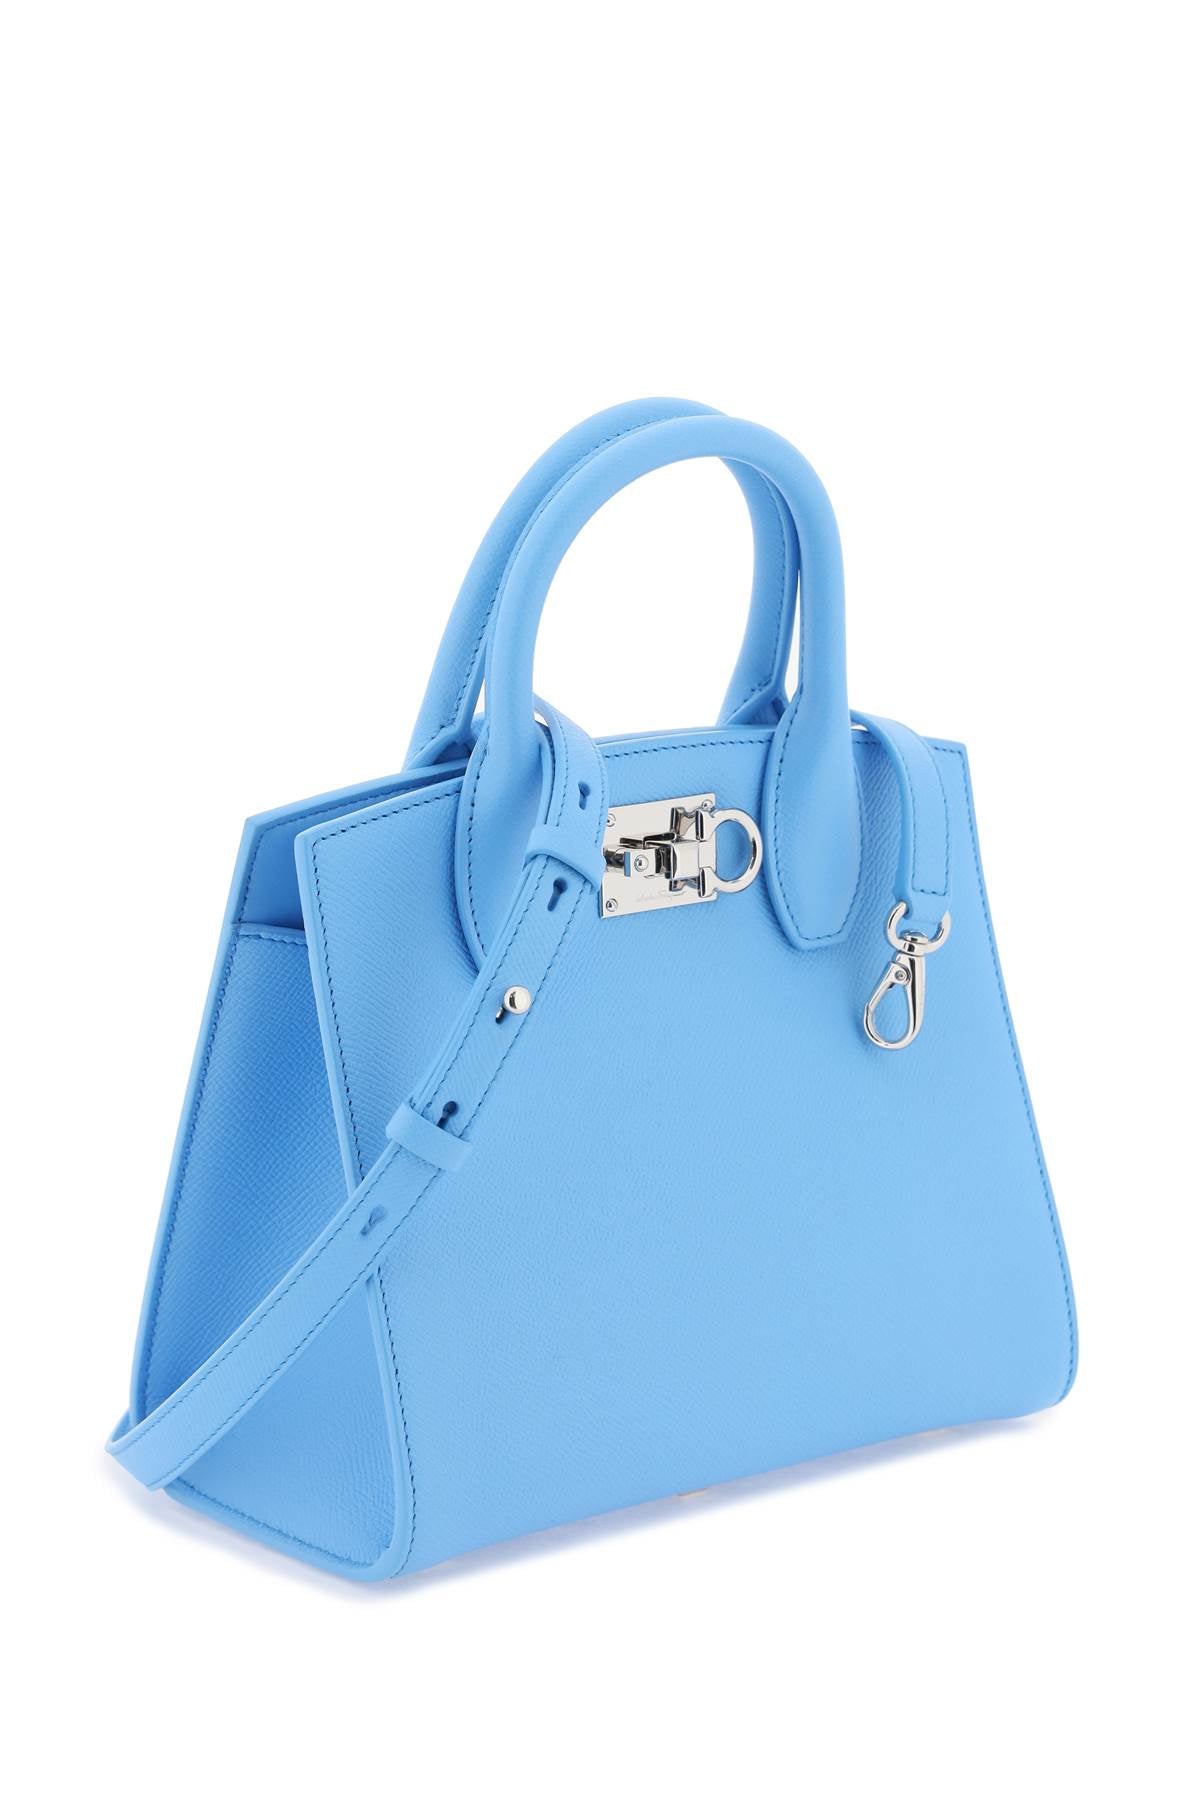 Túi xách mini da xanh nhạt với chất liệu cao cấp và họa tiết kích cỡ Gancini đặc trưng